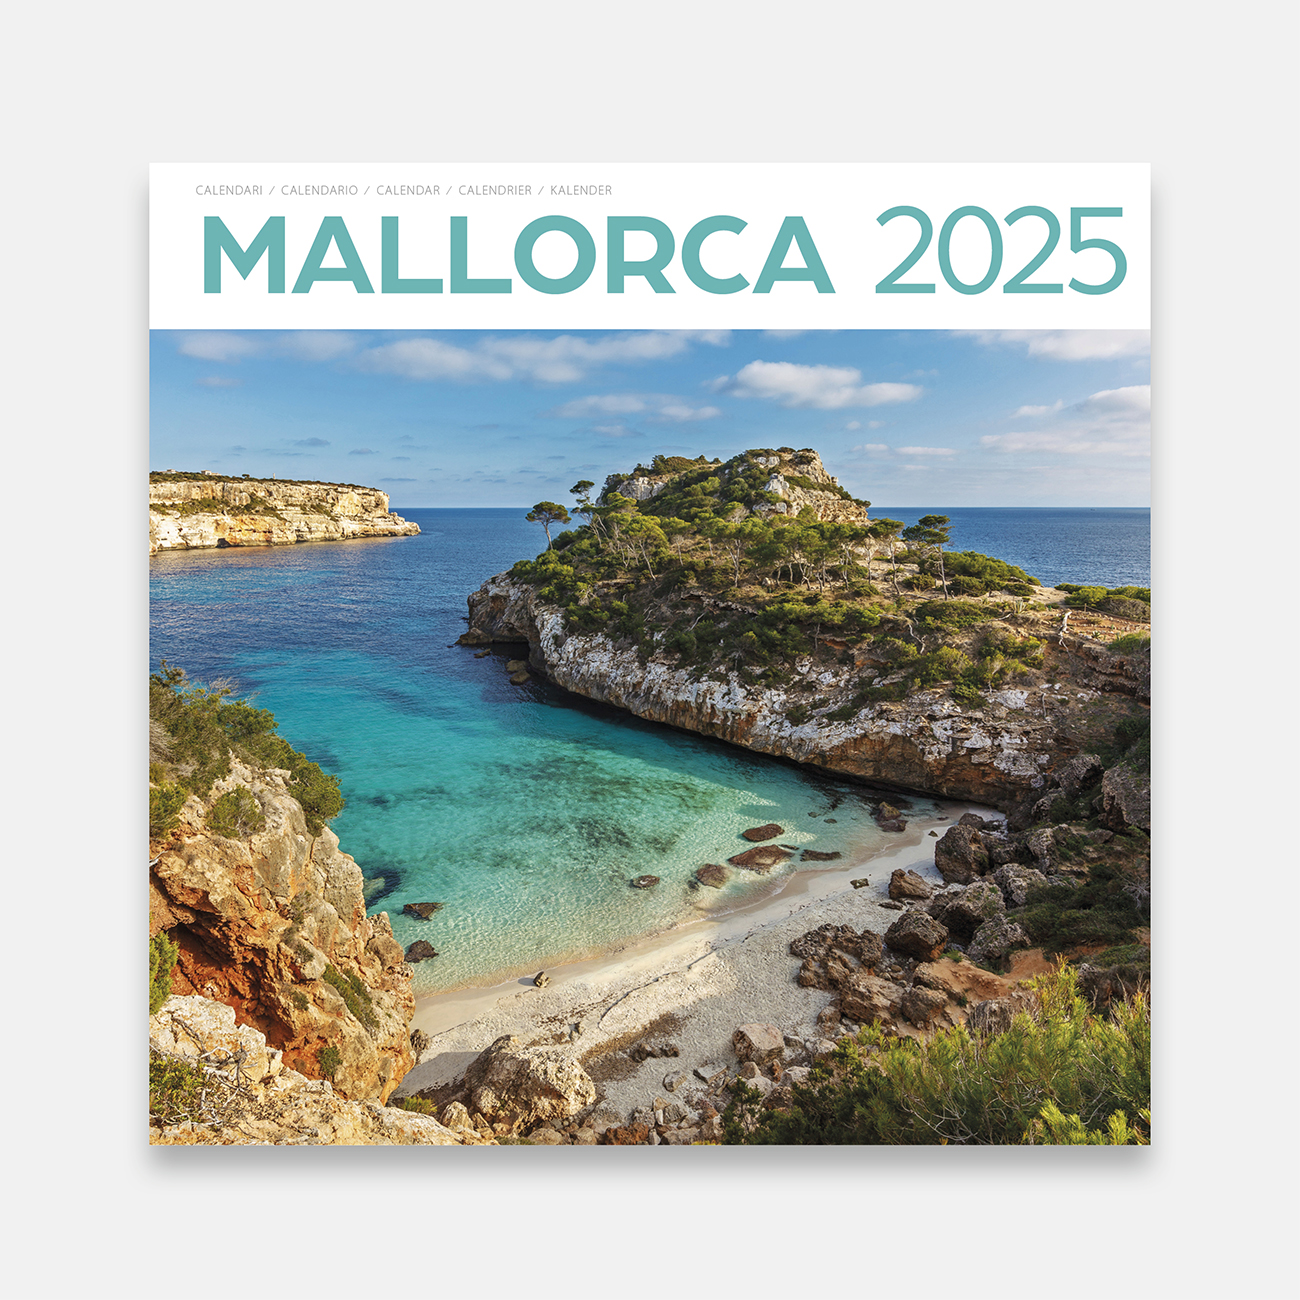 Calendario 2025 Mallorca 25ma1 calendario pared 2025 mallorca